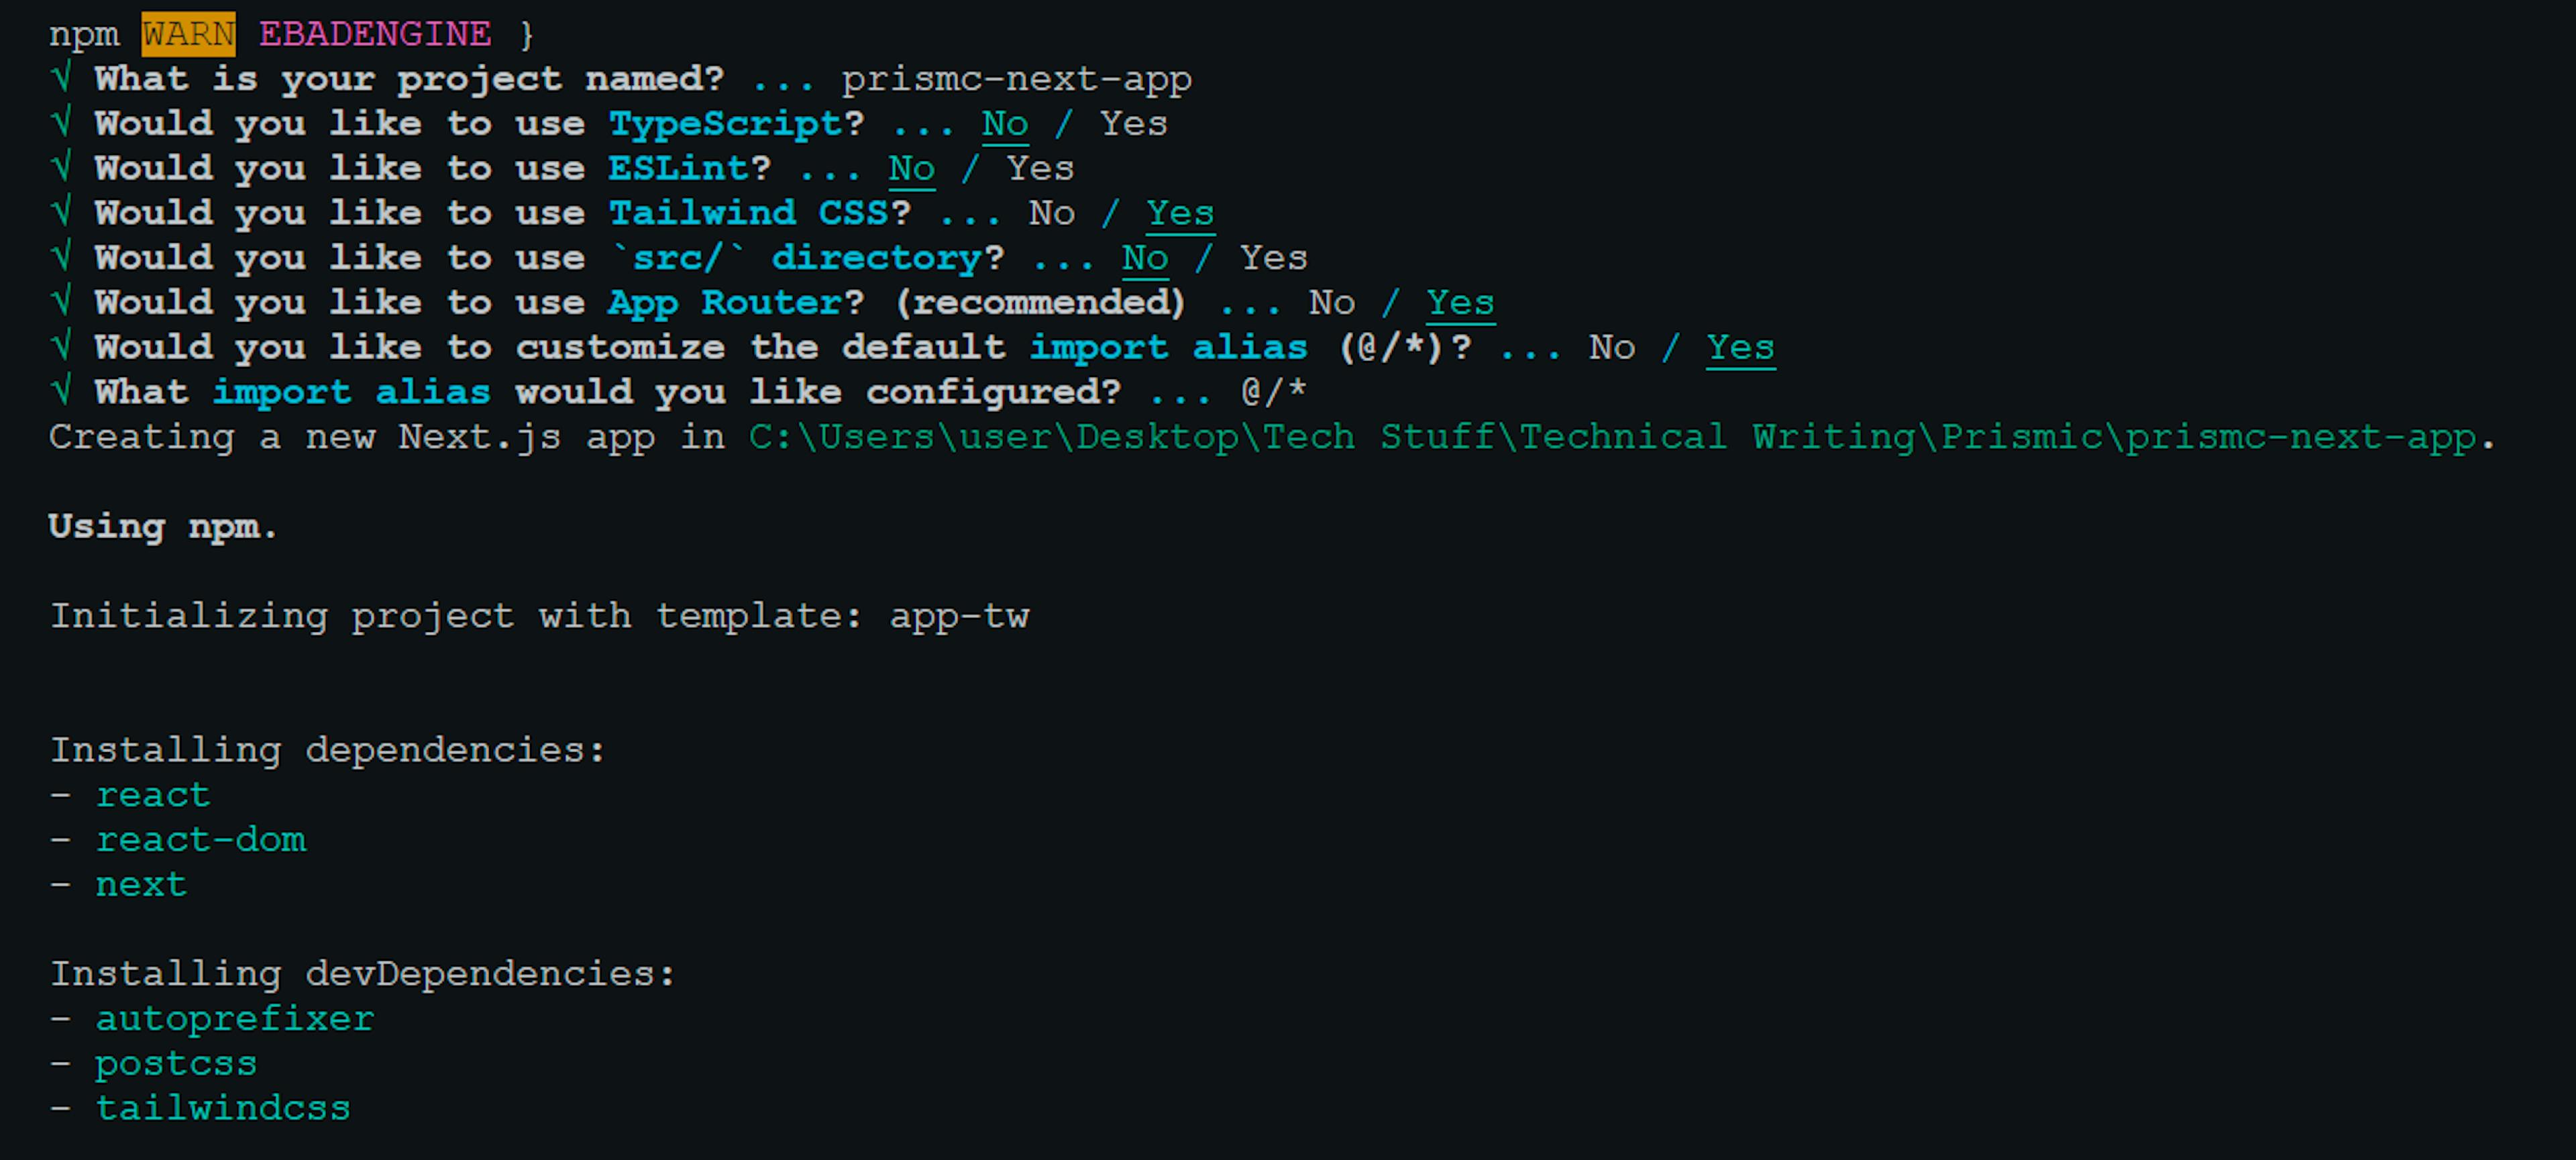 An image of the Next.js terminal interface.